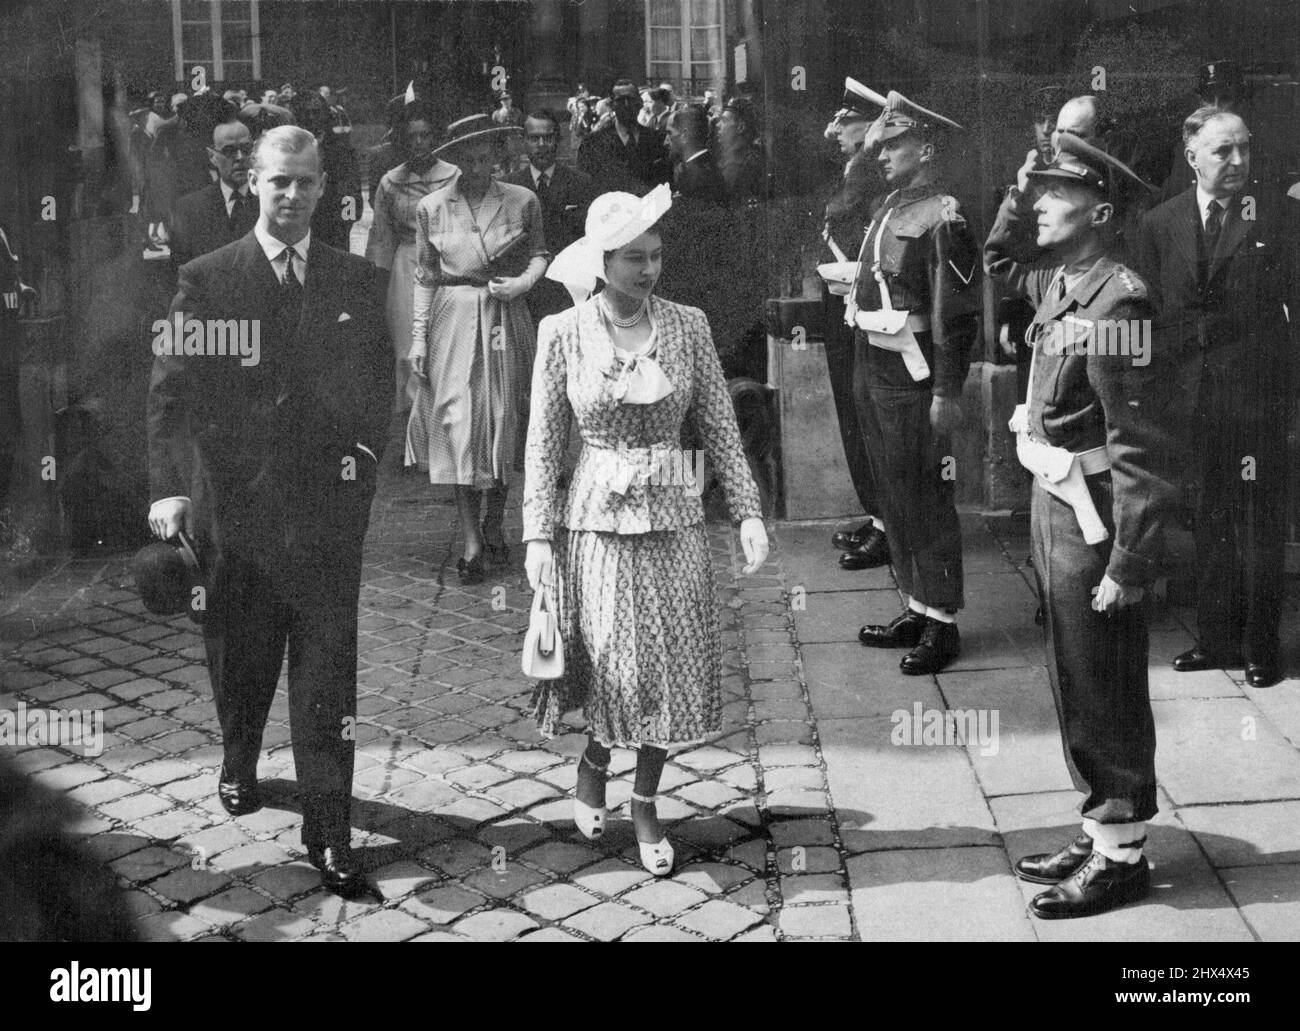 La princesse marche jusqu'à l'église de Paris -- la princesse Elizabeth, dans un costume vert et blanc imprimé de deux pièces avec jupe plissée, chapeau de paille blanc, chaussures blanches, gant et sac, laissant l'église de l'ambassade britannique avec le duc d'Édimbourg après avoir assisté au service divin. Sir Oliver Harvey, ambassadeur britannique, et Lady Harvay se trouvent derrière vous. Presque tous les membres de la colonie britannique à Paris sont venus voir la princesse et le duc alors qu'ils marchaient de l'ambassade à l'église de la rue d'Agusseau, où l'aumônier, le Dr G. A. Chambers, prêchait le sermon. 17 mai 1948. Banque D'Images